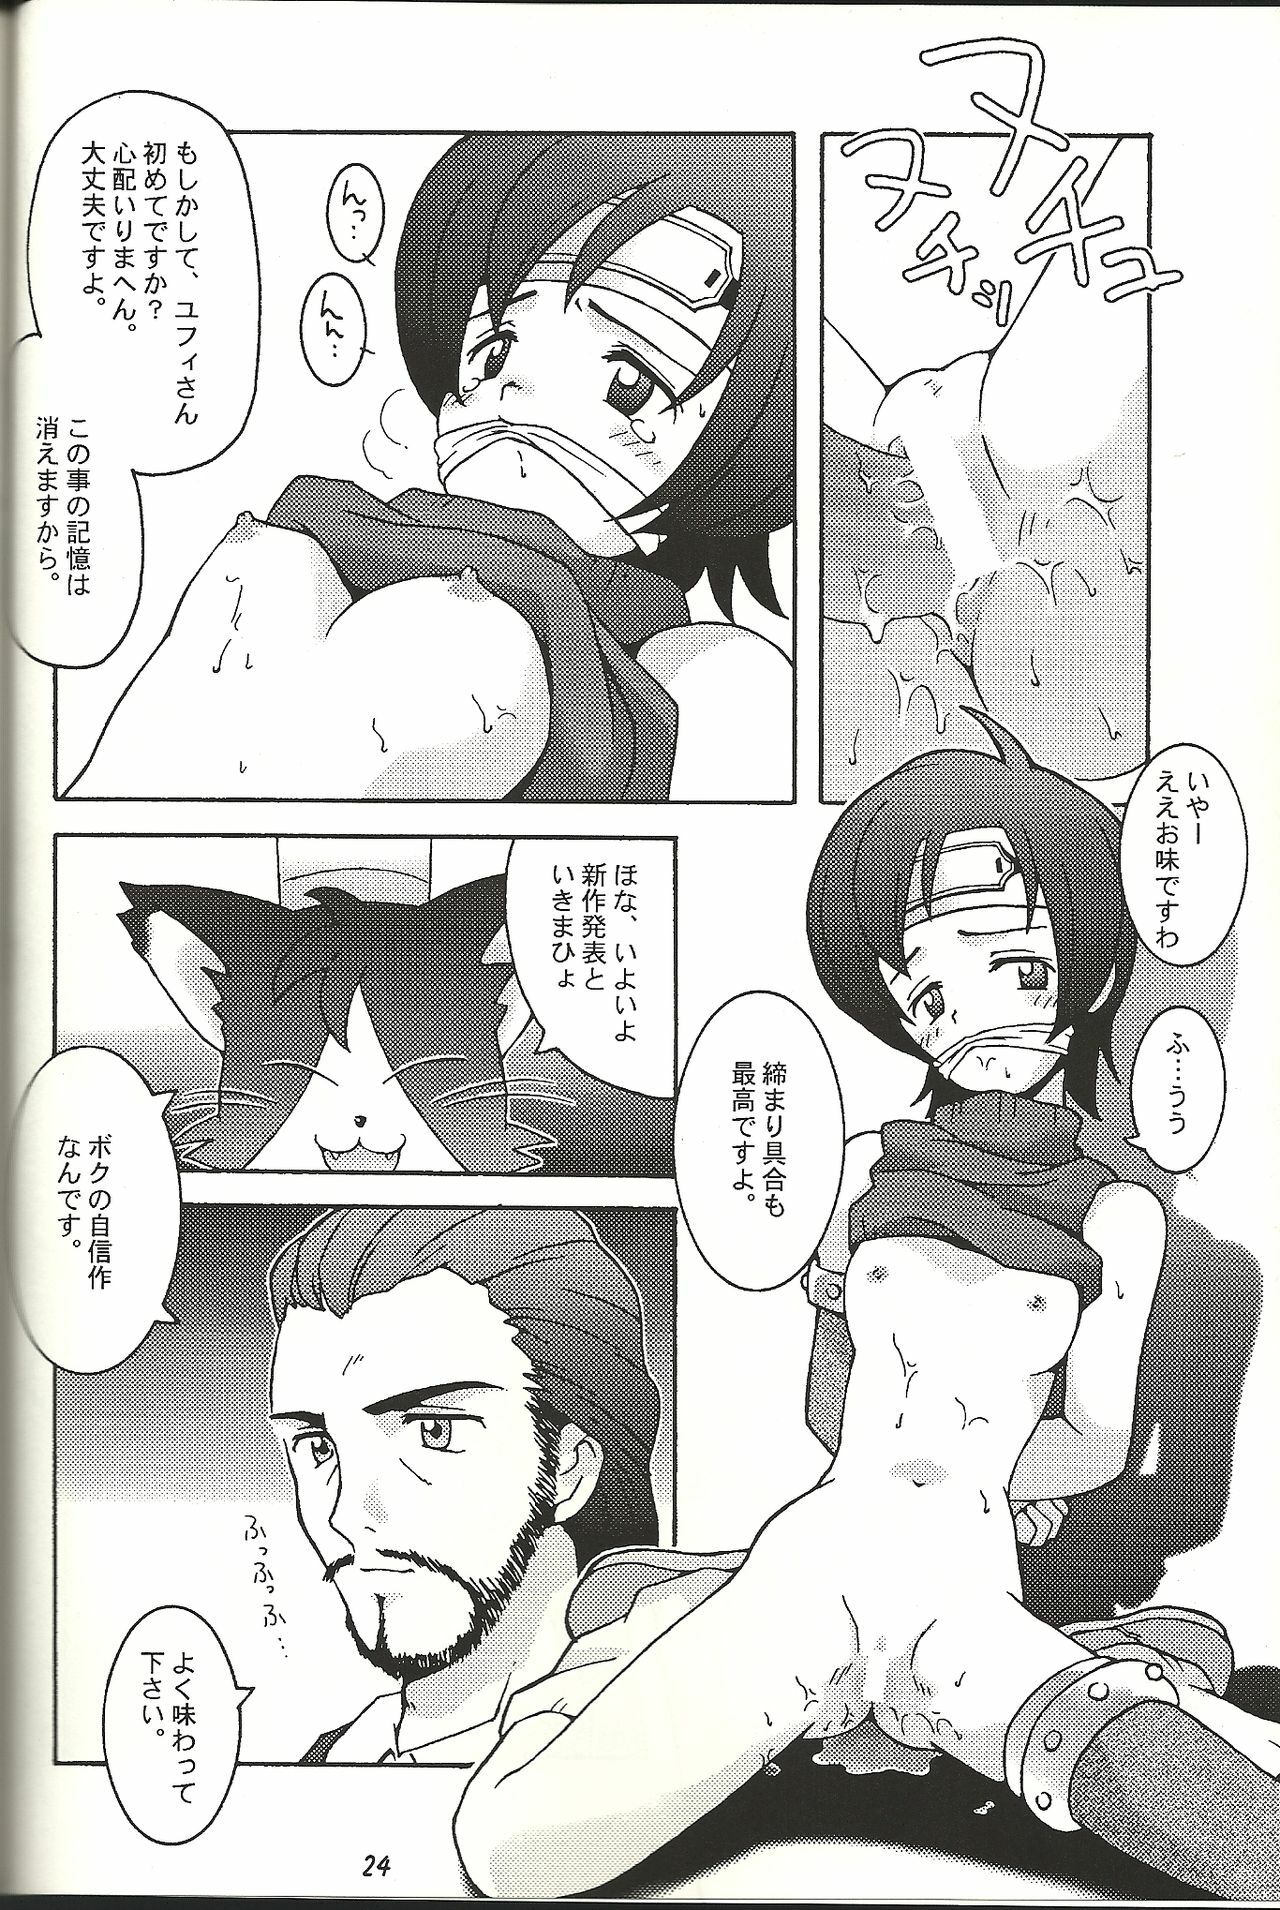 (CR21) [Bakuhatsu BRS. (B.Tarou)] Renai Shiyou (Final Fantasy VII) page 24 full